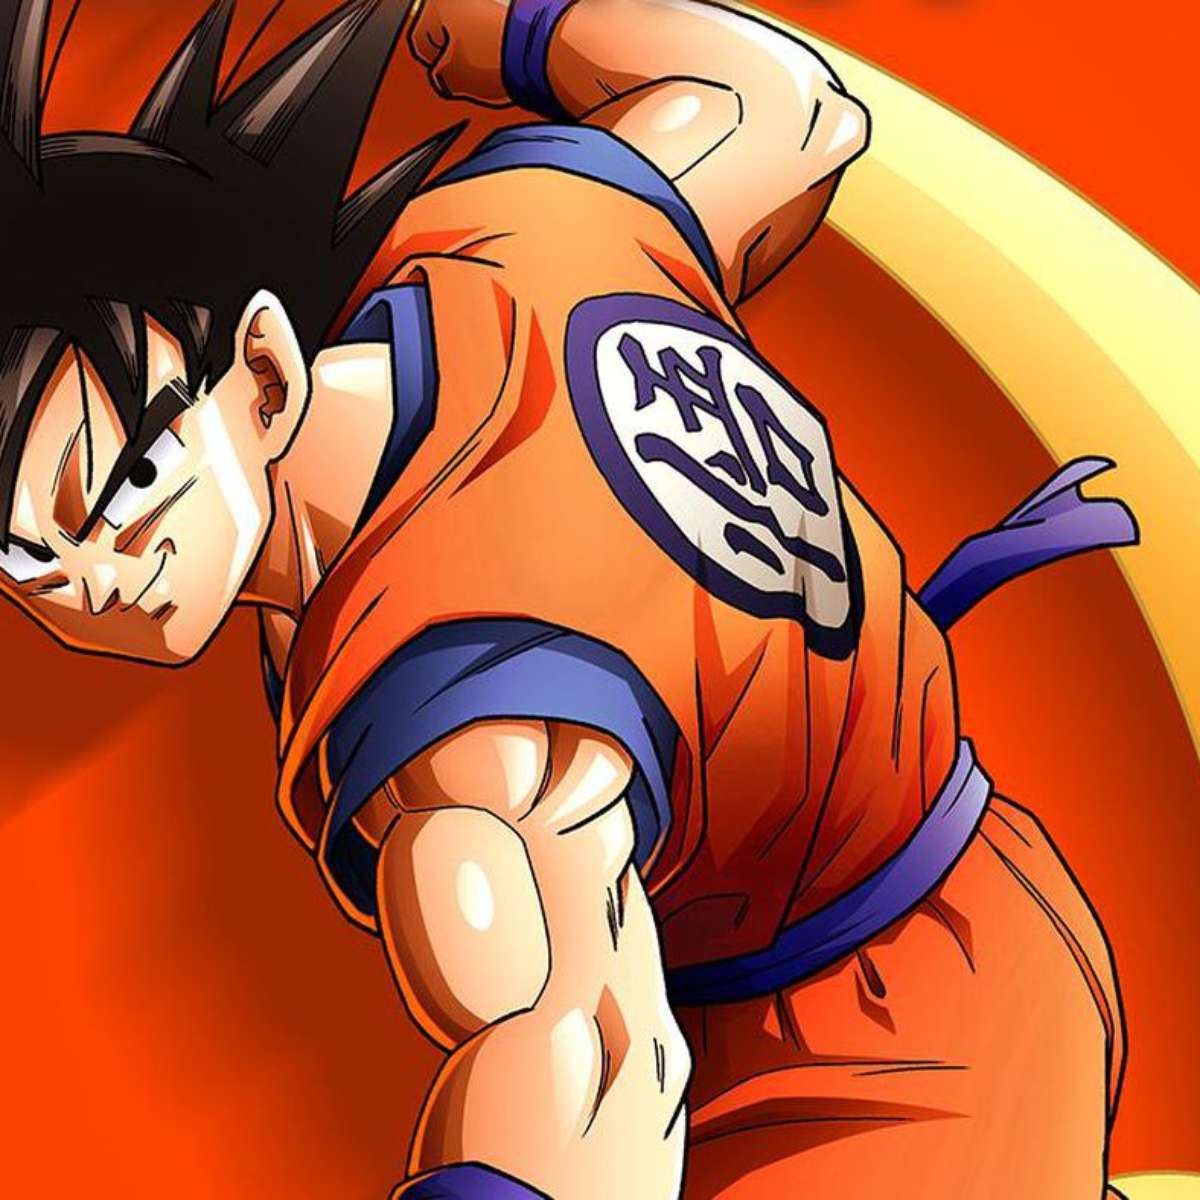 Dragon Ball Super: Super Hero é lançado no Japão e os spoilers já vazaram;  confira!